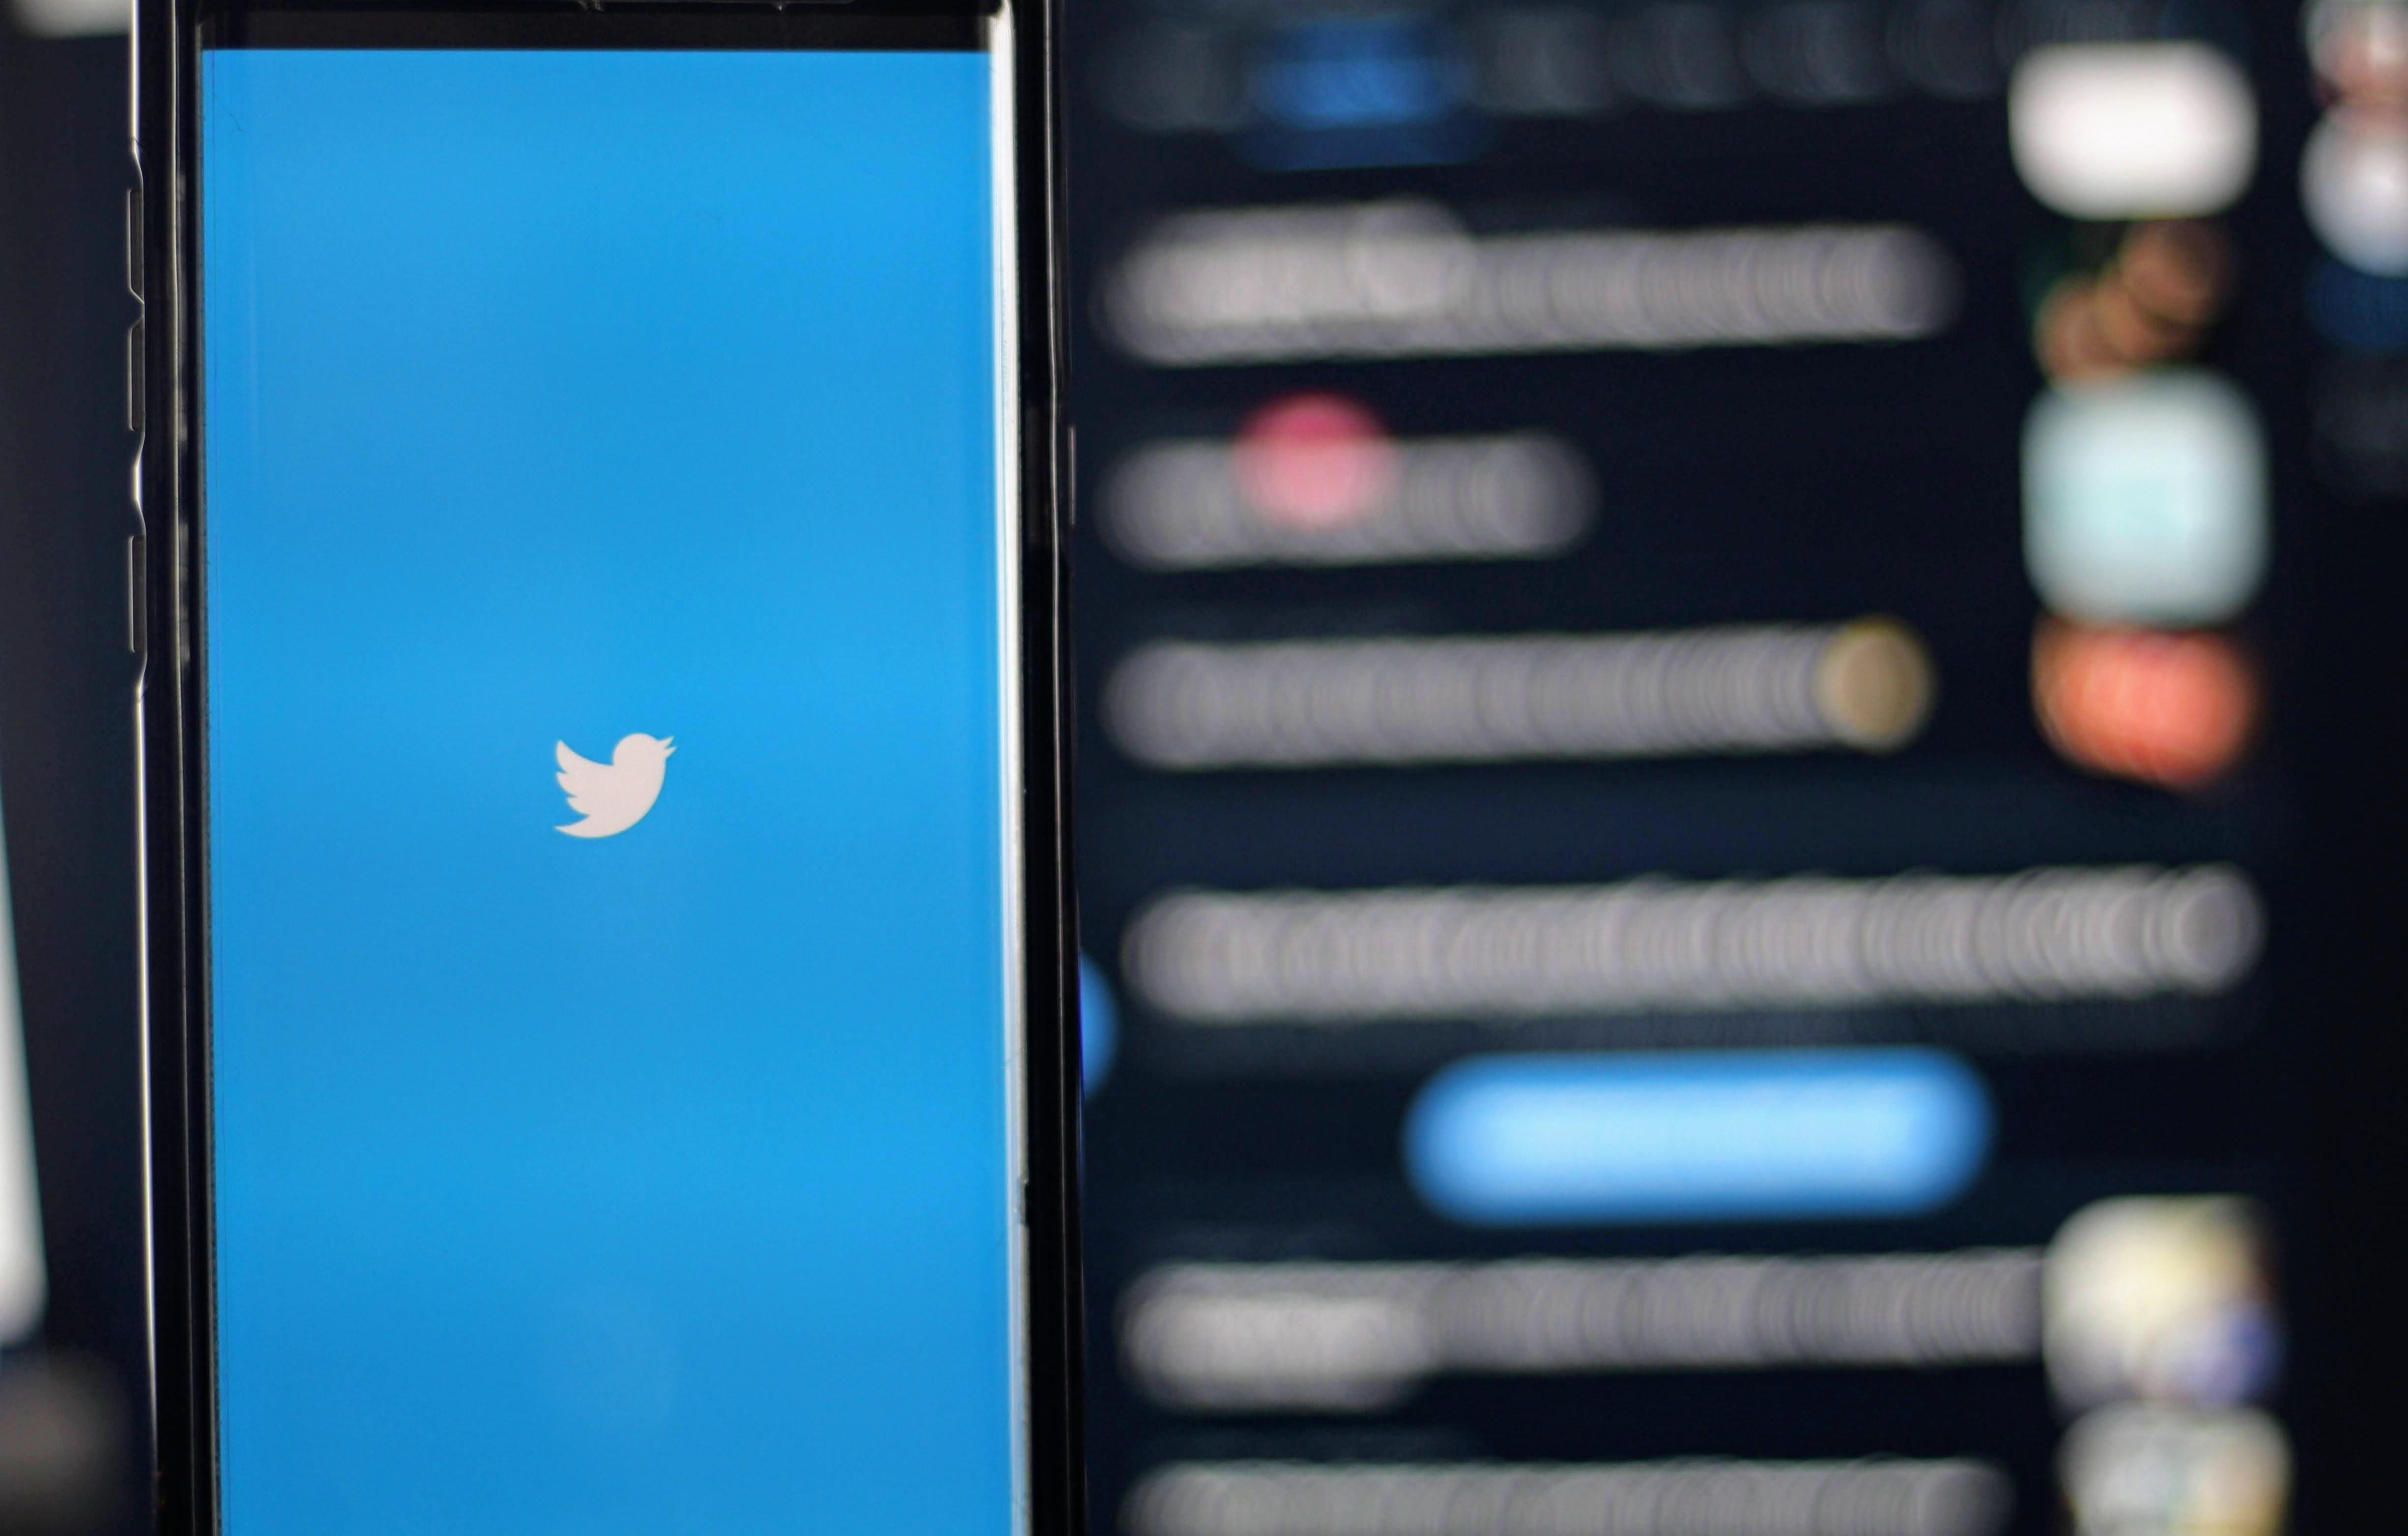 A Twitter logója (fehér madár kék alapon) látható egy okostelefon képernyőjén homályos háttér előtt